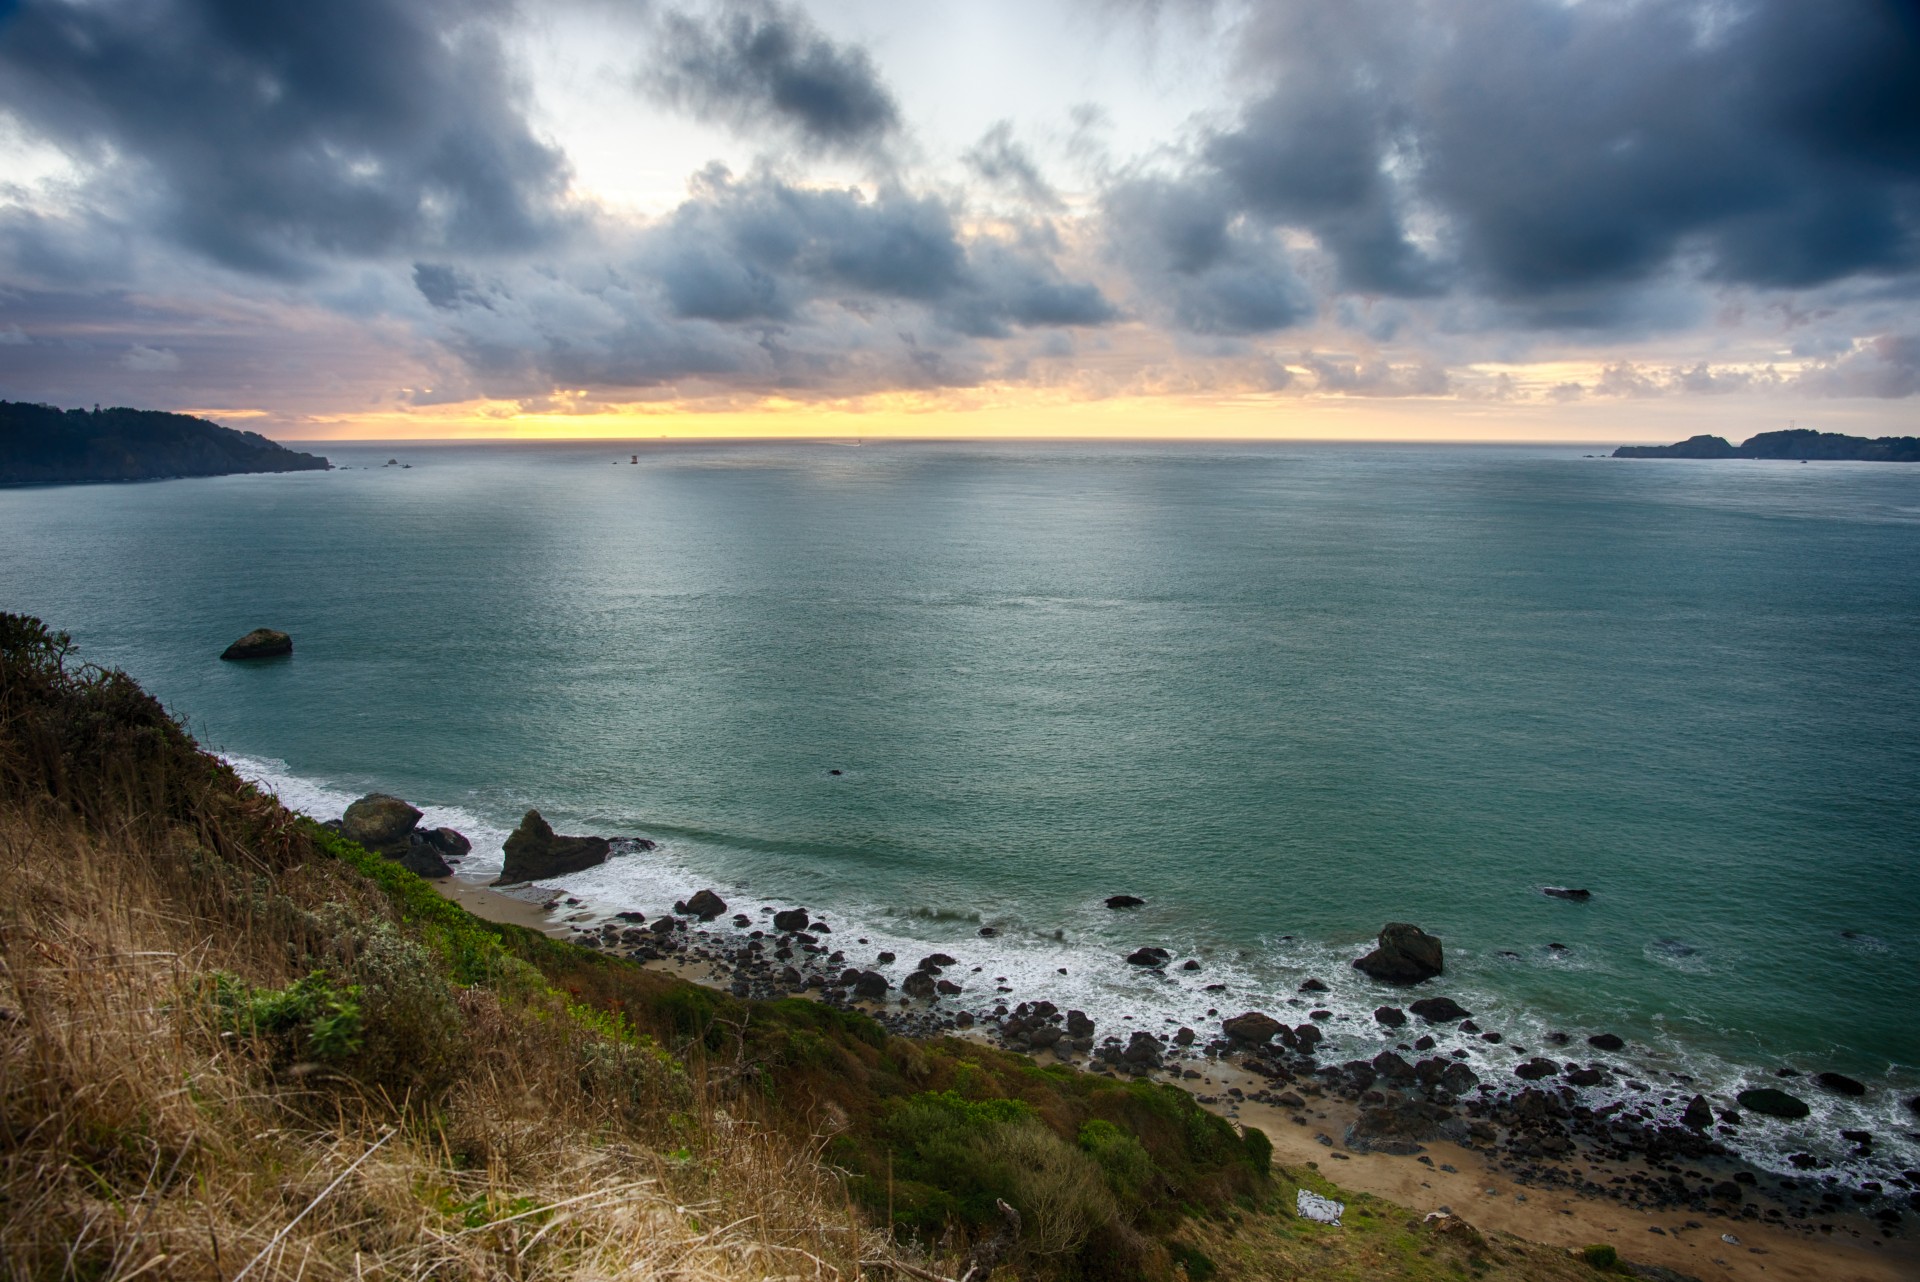 Sun sets over the Pacific Ocean on a rocky coastline near San Francisco.